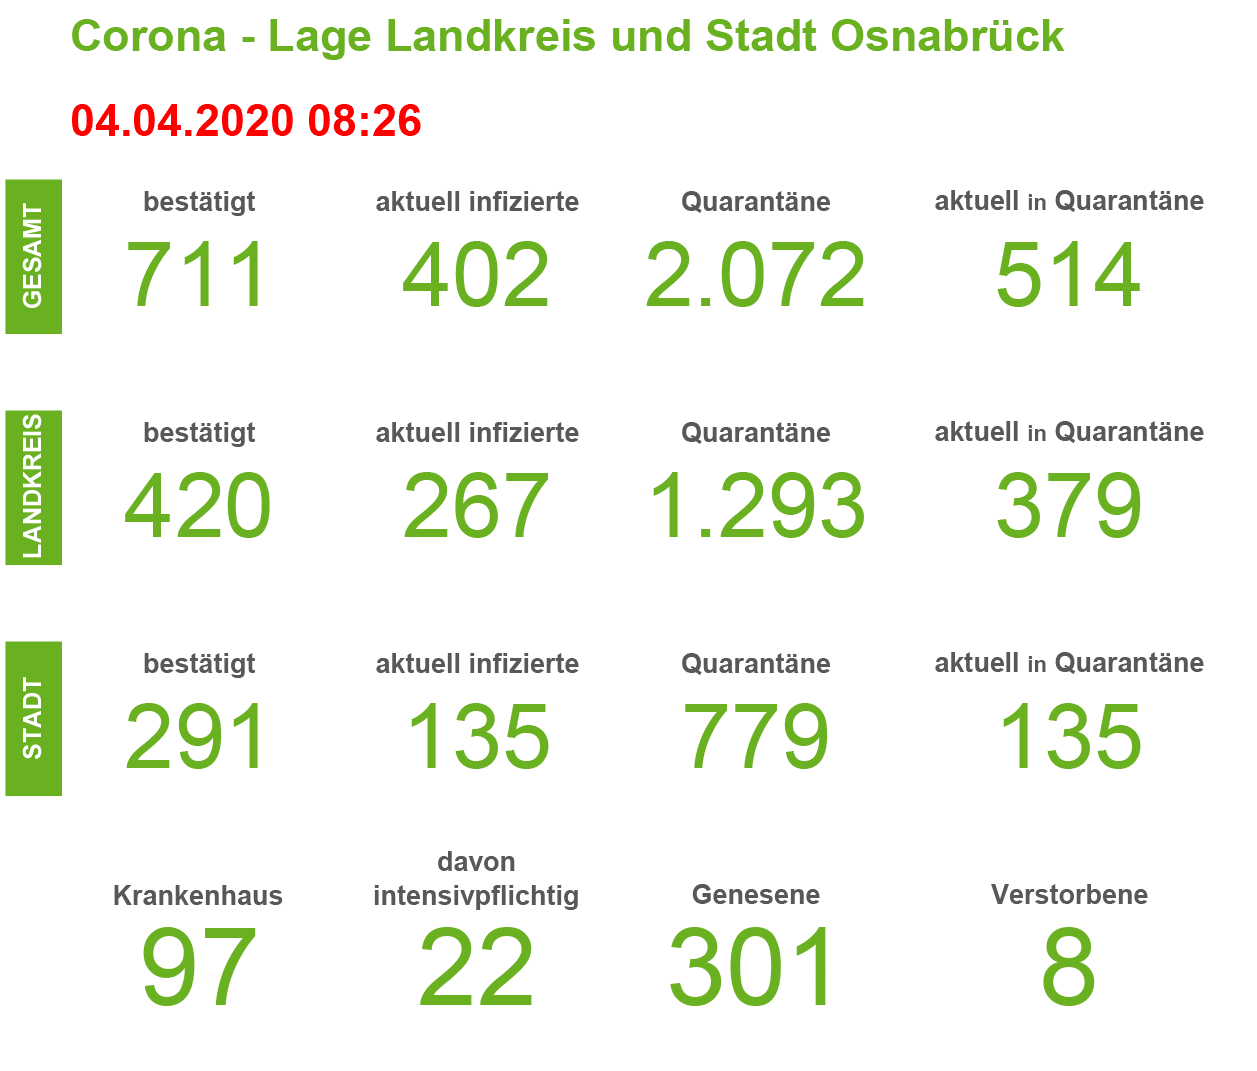 Weiterer Corona-Todesfall in der Region – Hotspots sind: Hagen, Hilter, Bad Essen, Wallenhorst und Voltlage